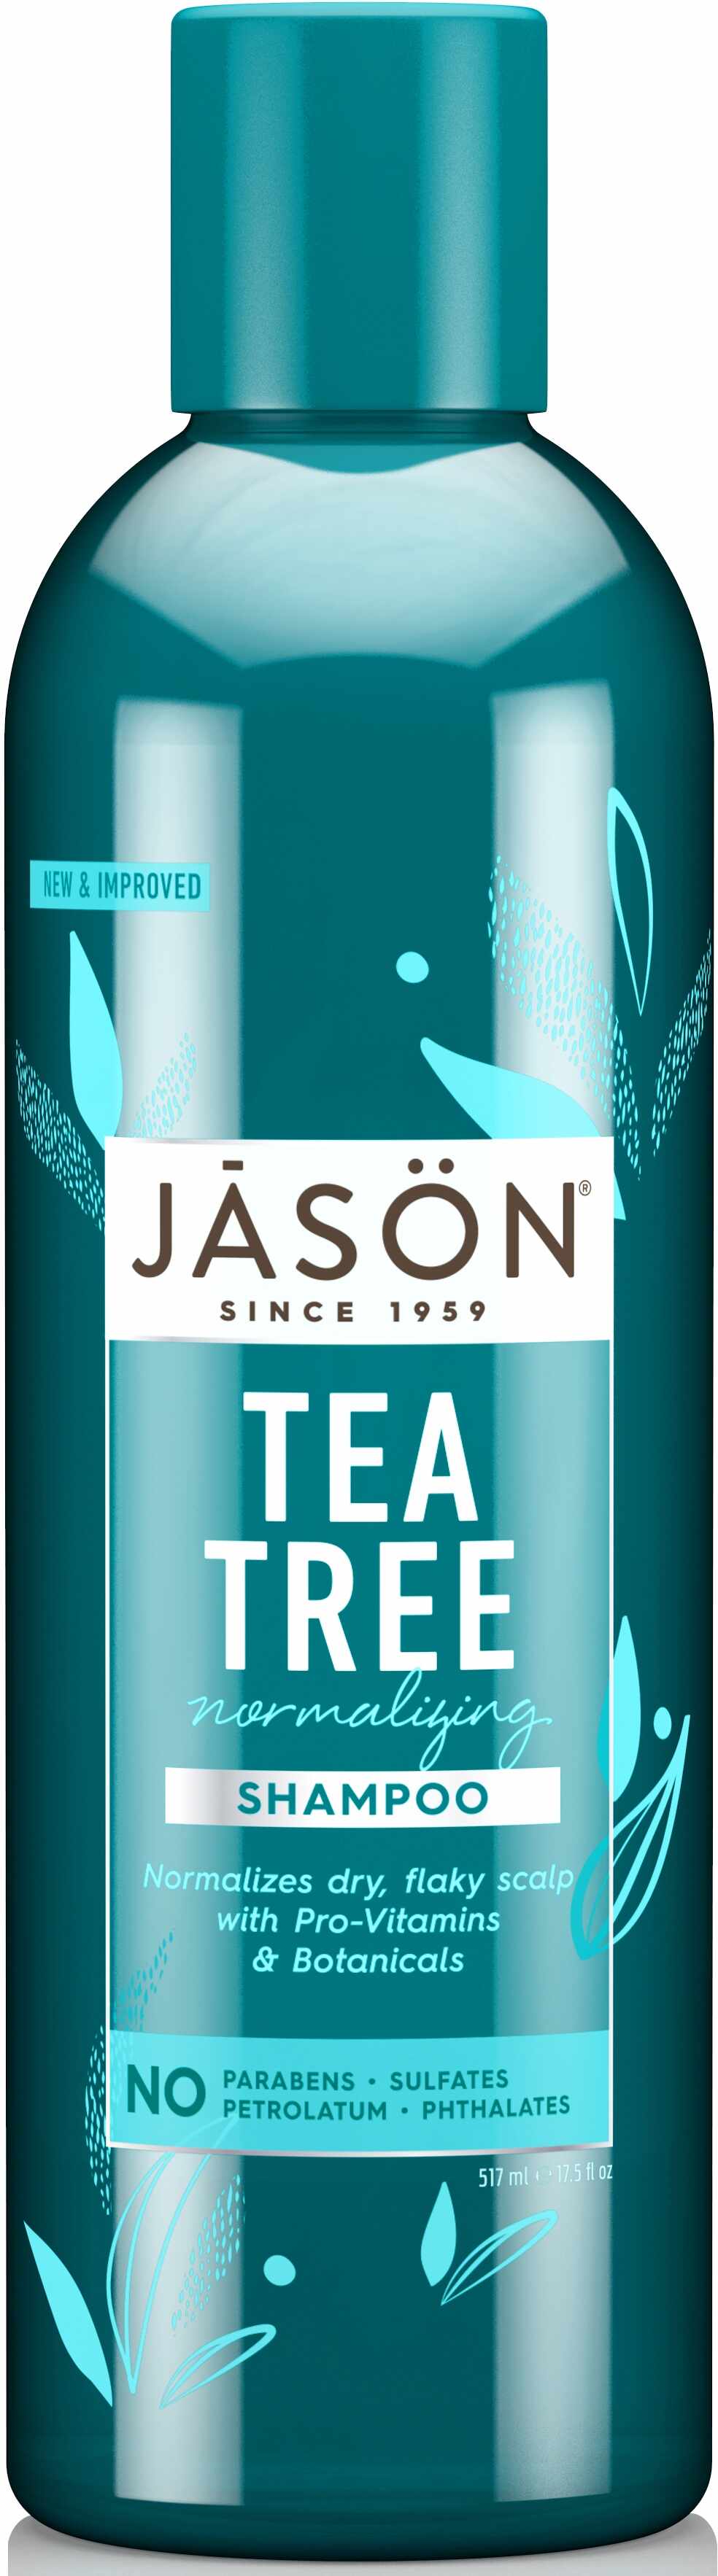 Jason Natural Sampon tratament cu tea tree, pt scalp iritat, 517ml